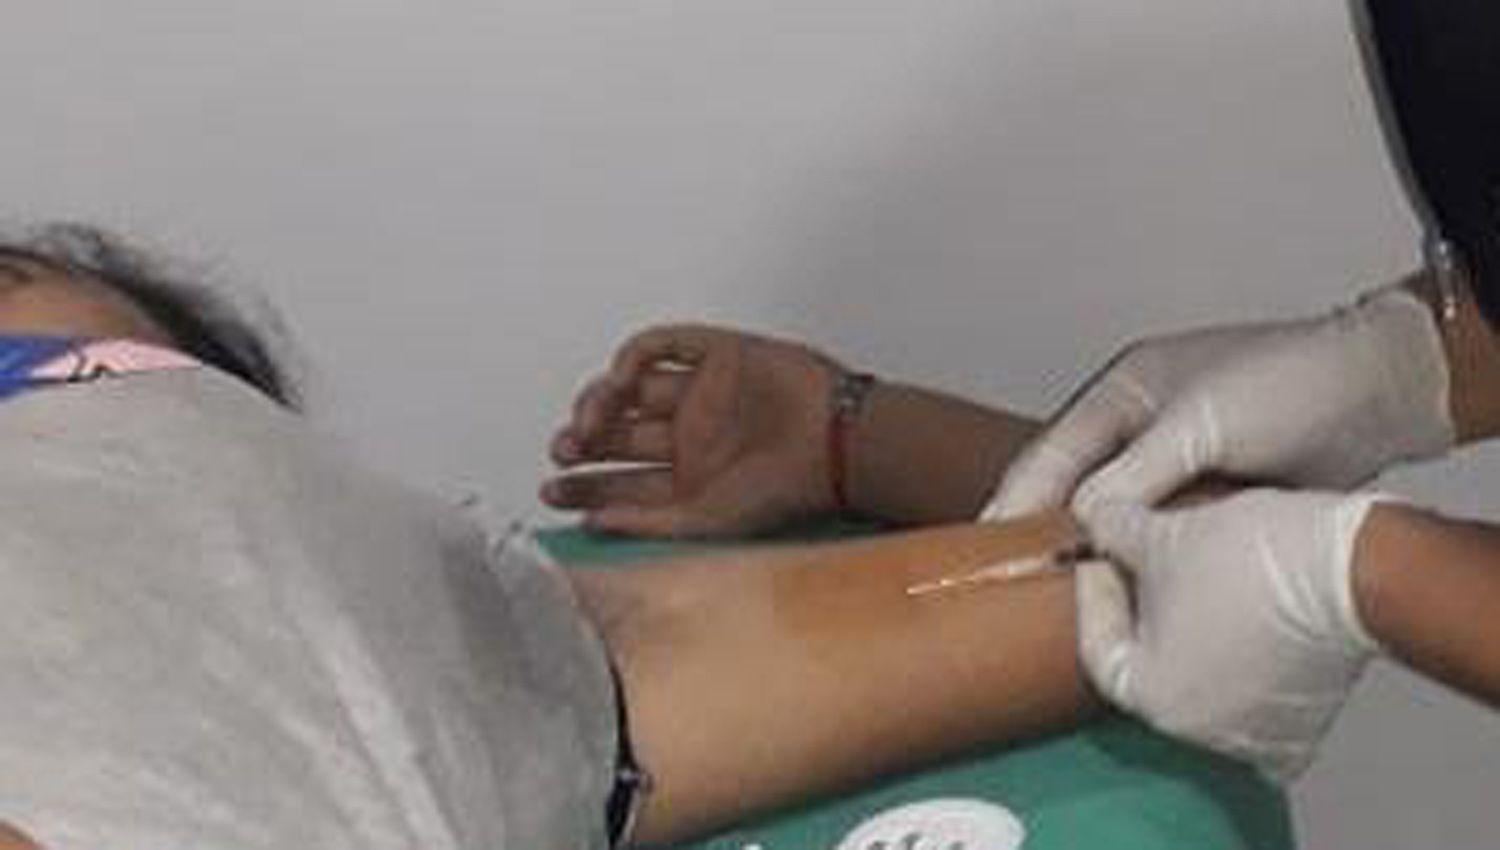 Colocaraacuten implantes subdeacutermicos a adolescentes en Centro de Atencioacuten Primaria de la Salud del barrio Juan Diacuteaz de Soliacutes